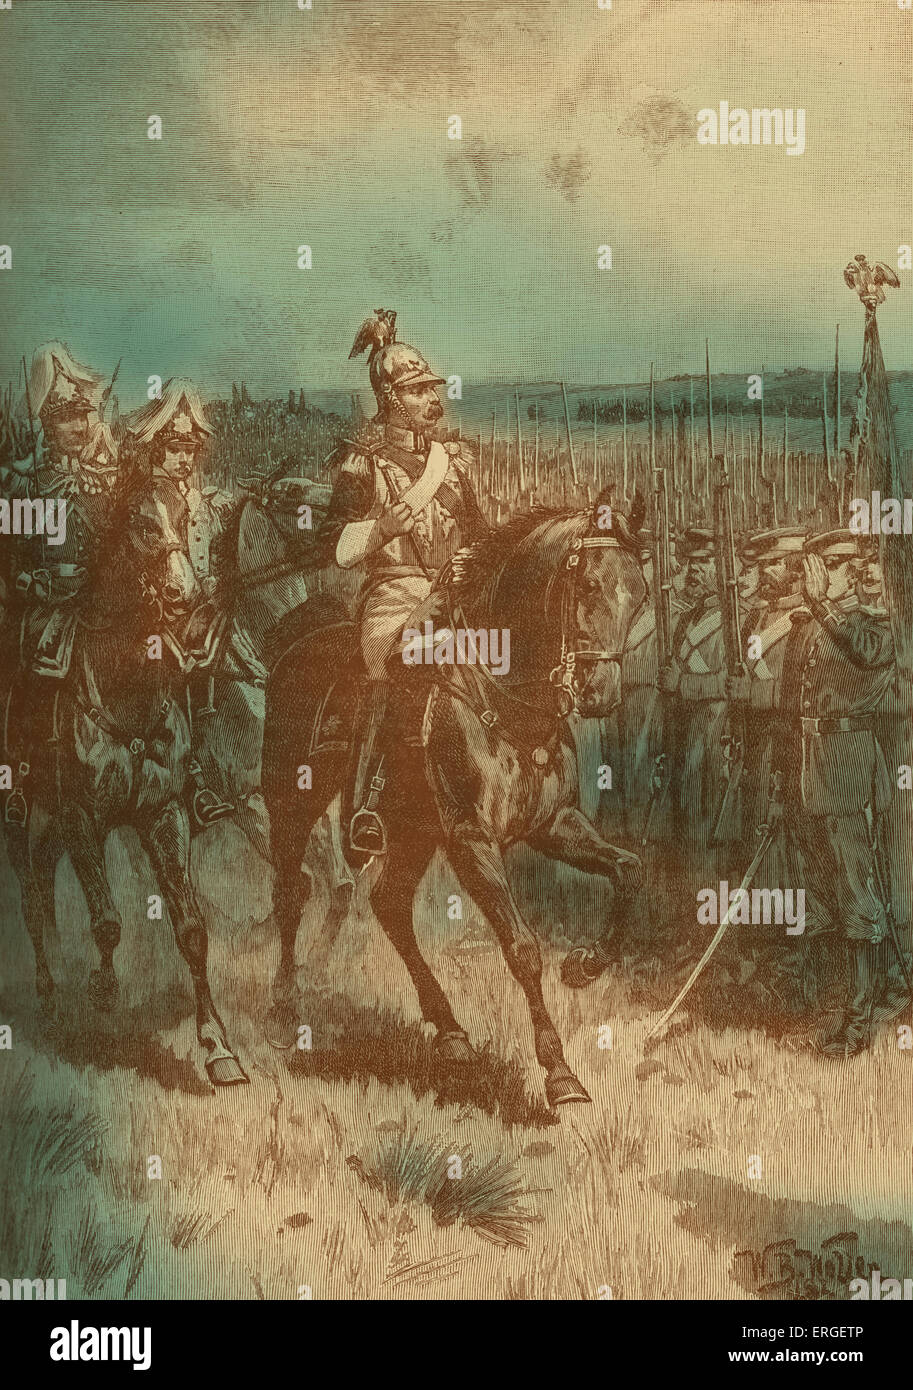 Nikolaus i. von Russland Überprüfung seiner Armee bei Sewastopol während des Krimkrieges (Oktober 1853 – Februar 1856). Konflikt zwischen Stockfoto